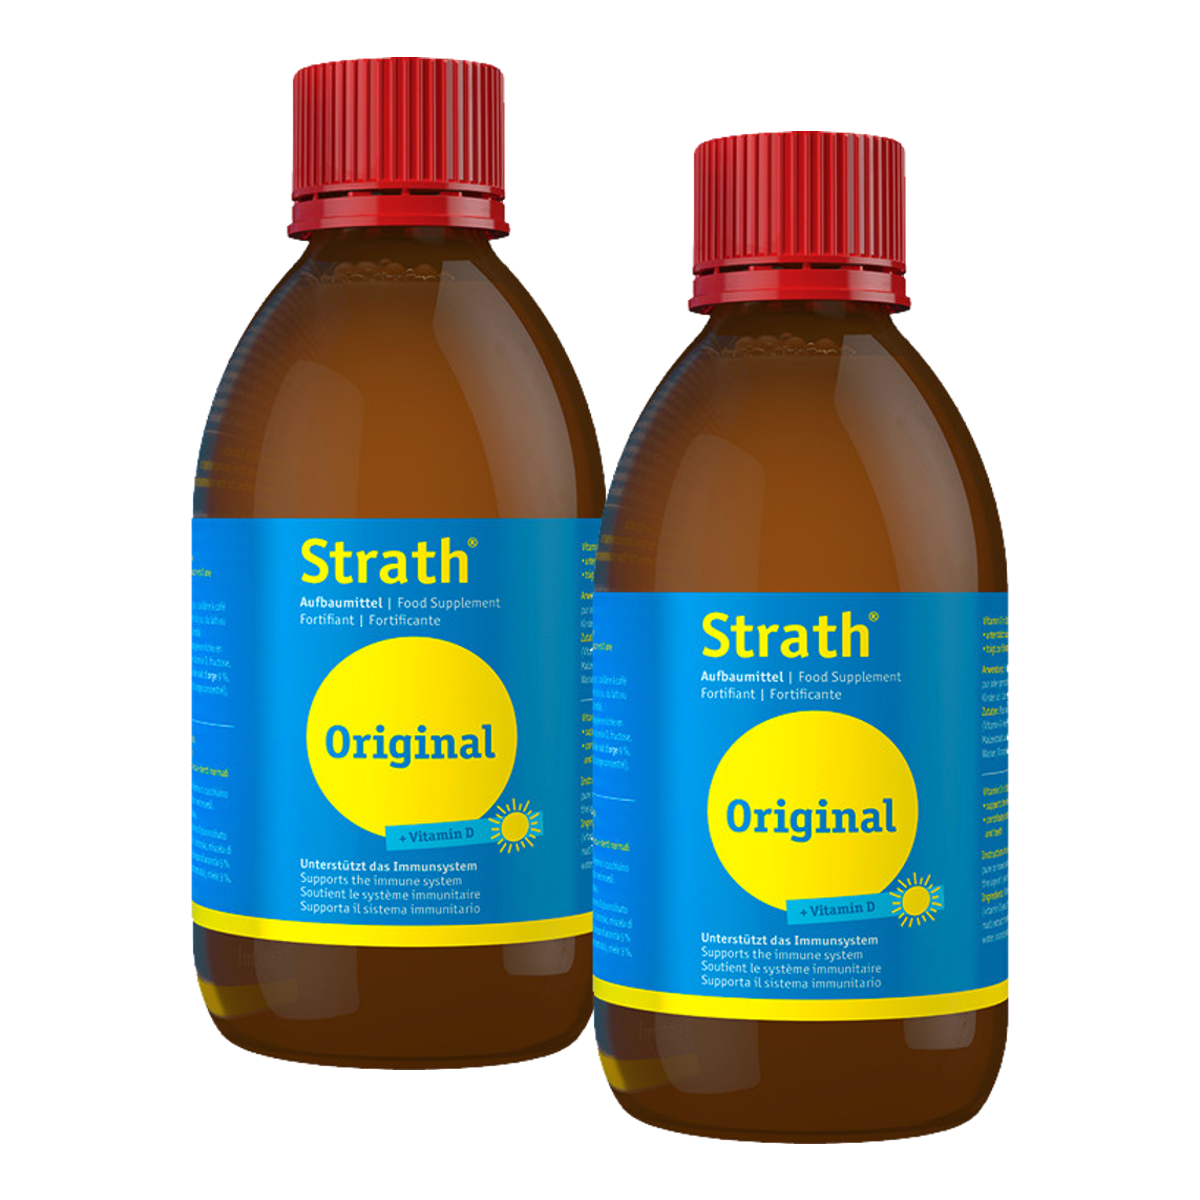 Strath Original + Vitamin D flüssig Duo 2x 500 ml